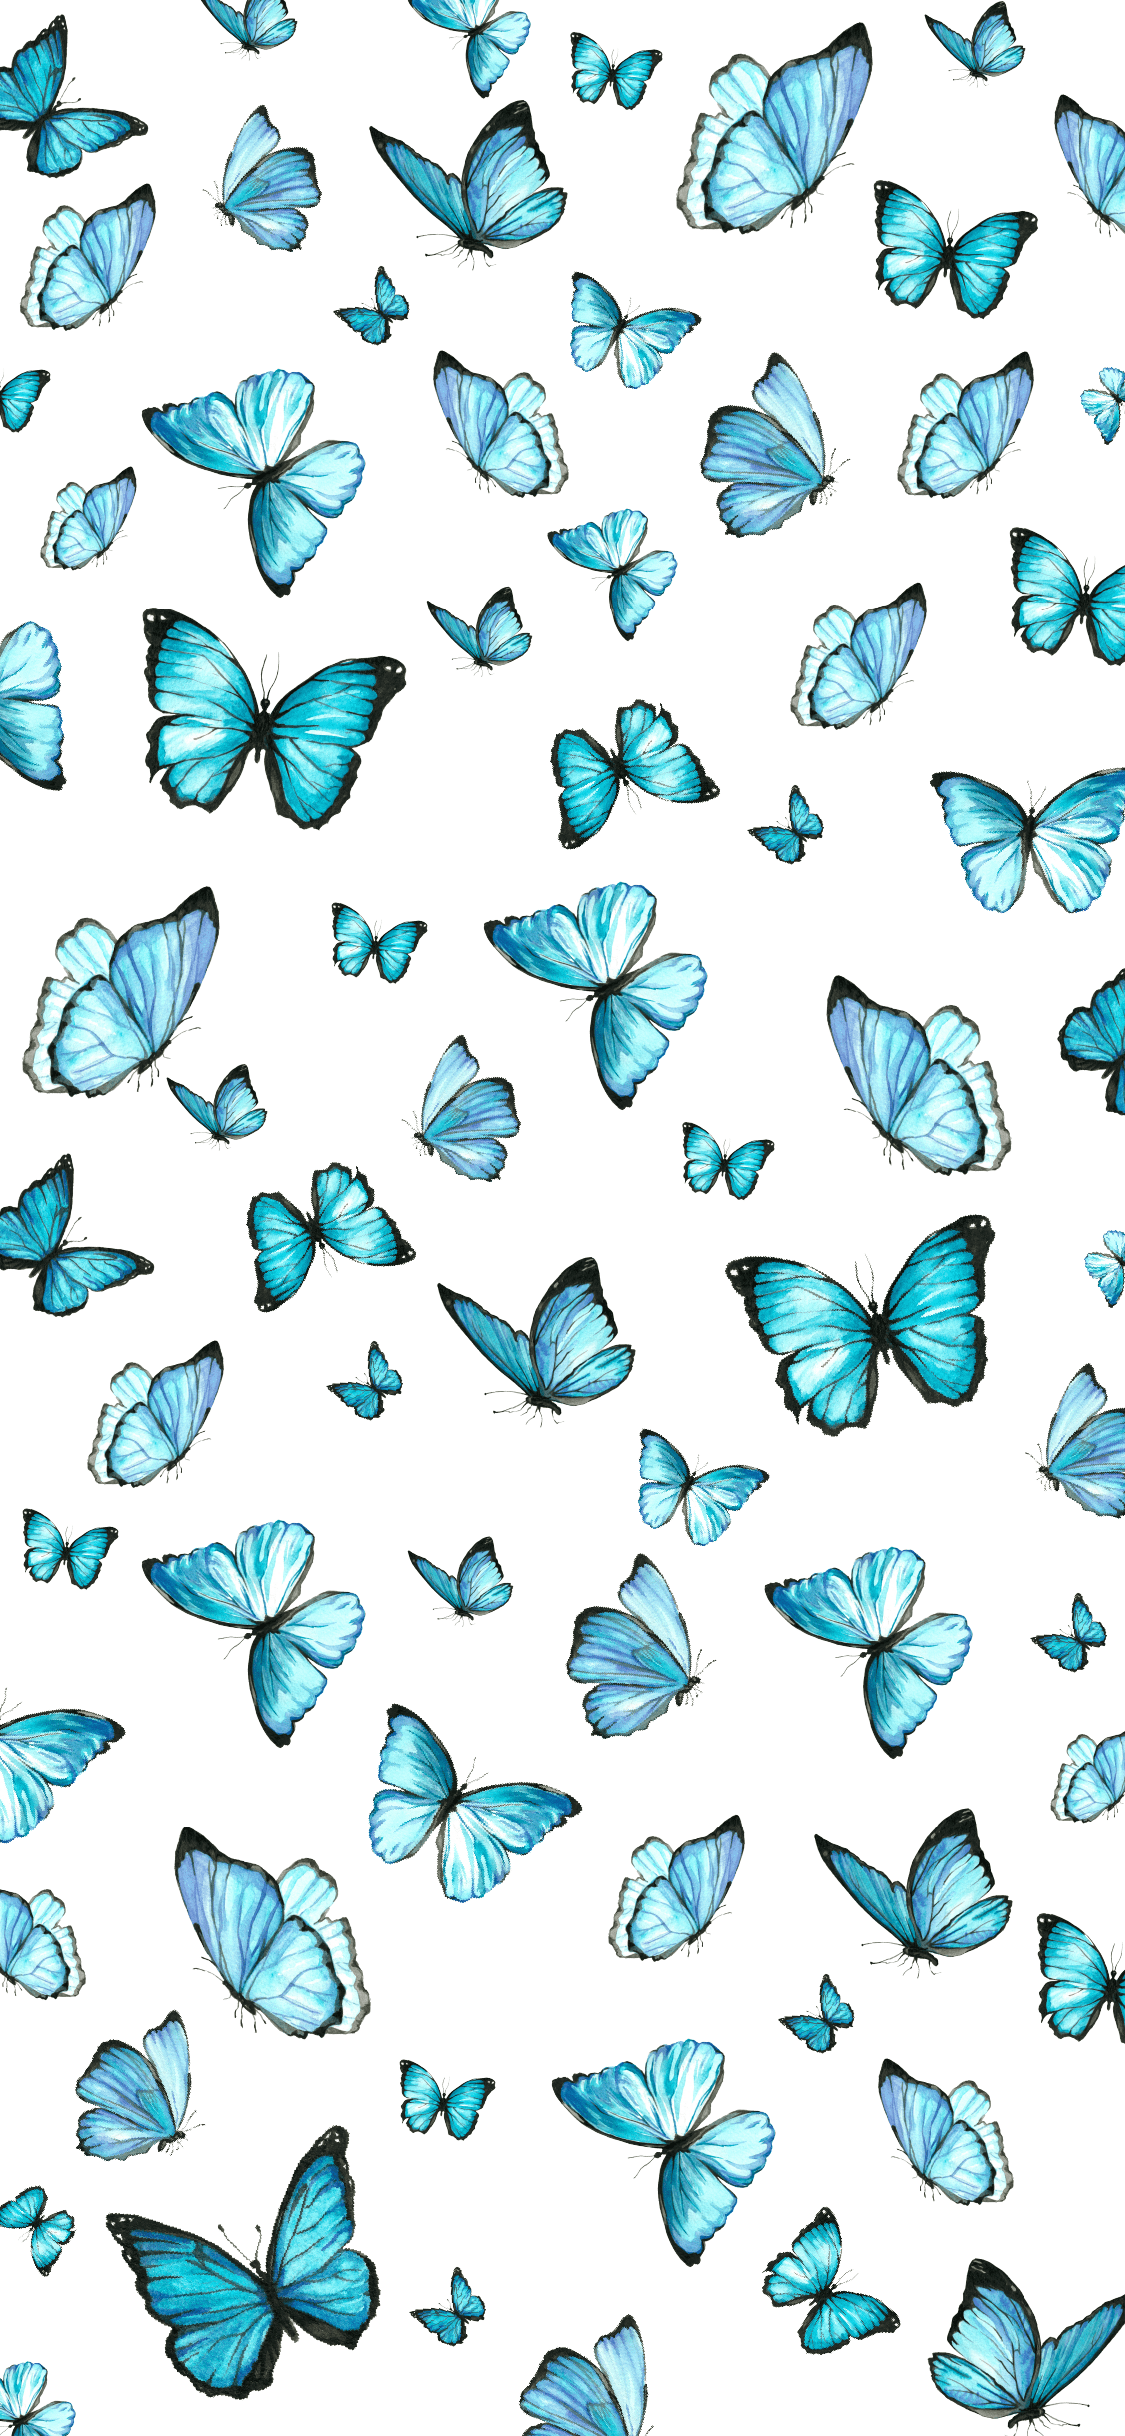 A pattern of blue butterflies on white - Butterfly